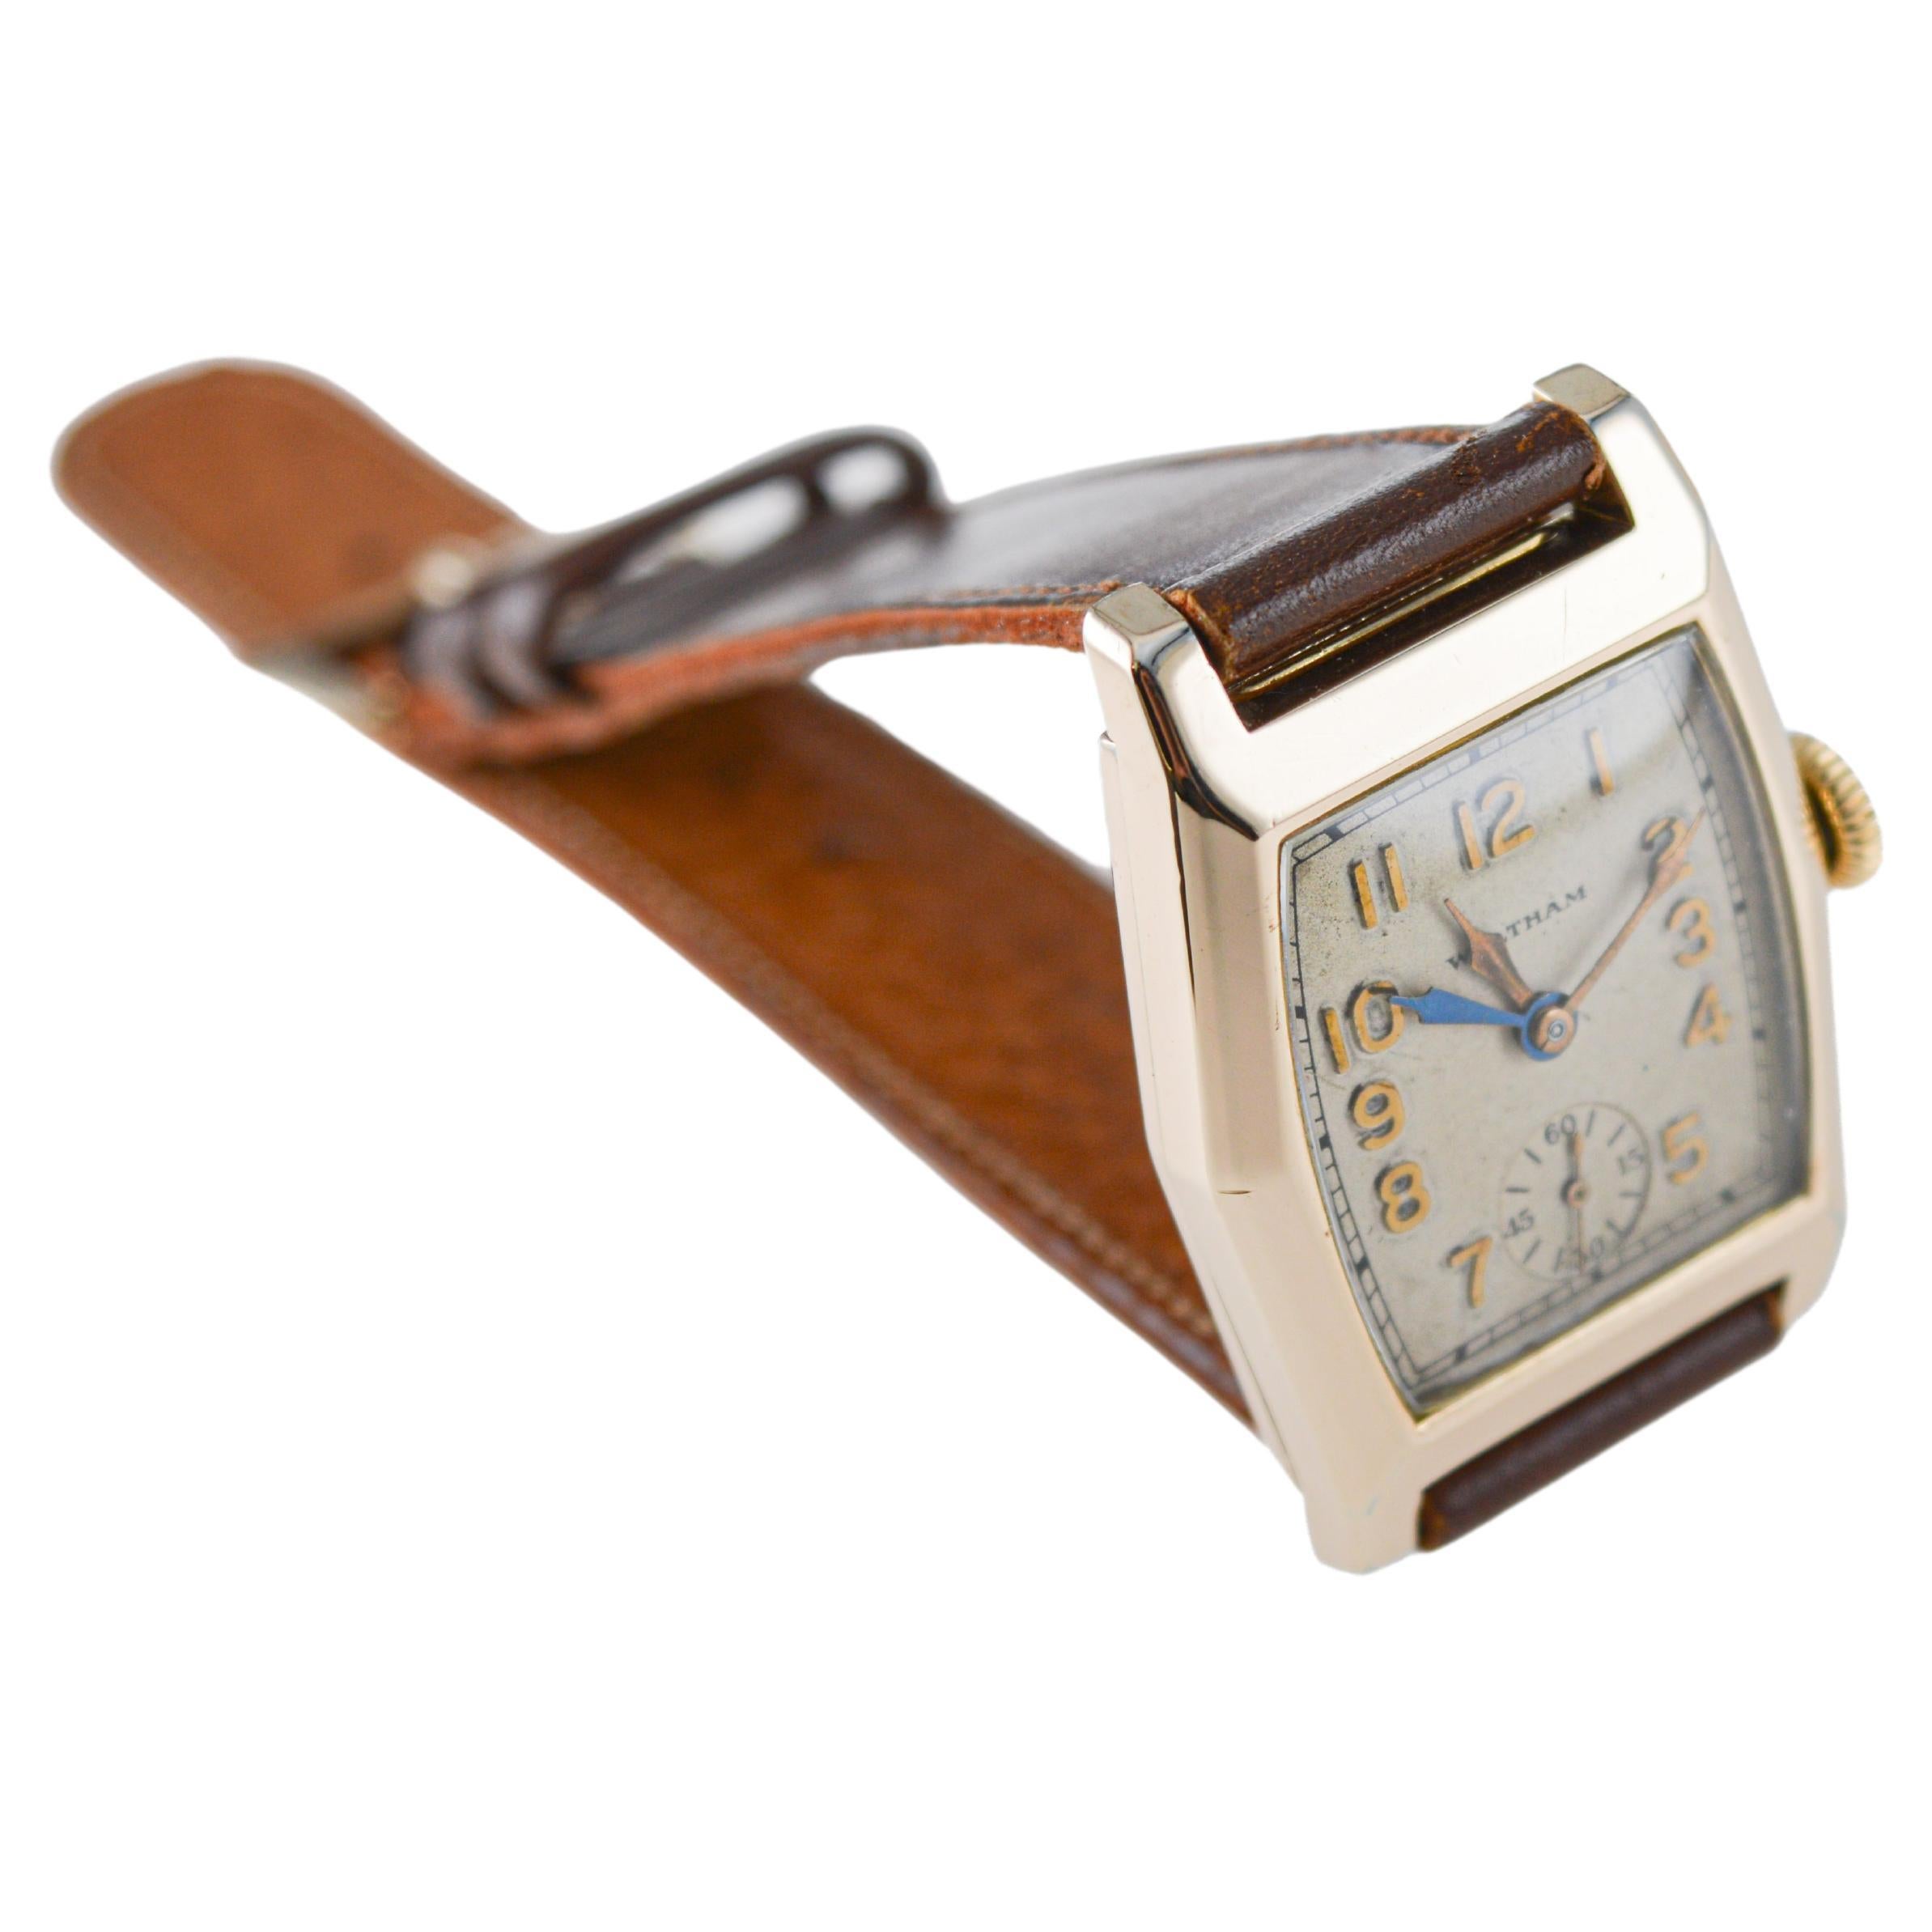  Waltham Yellow Gold Filled Art Deco Dual Time Watch with Original Dial and Strap (Montre à double fuseau horaire avec cadran et bracelet d'origine) Unisexe 